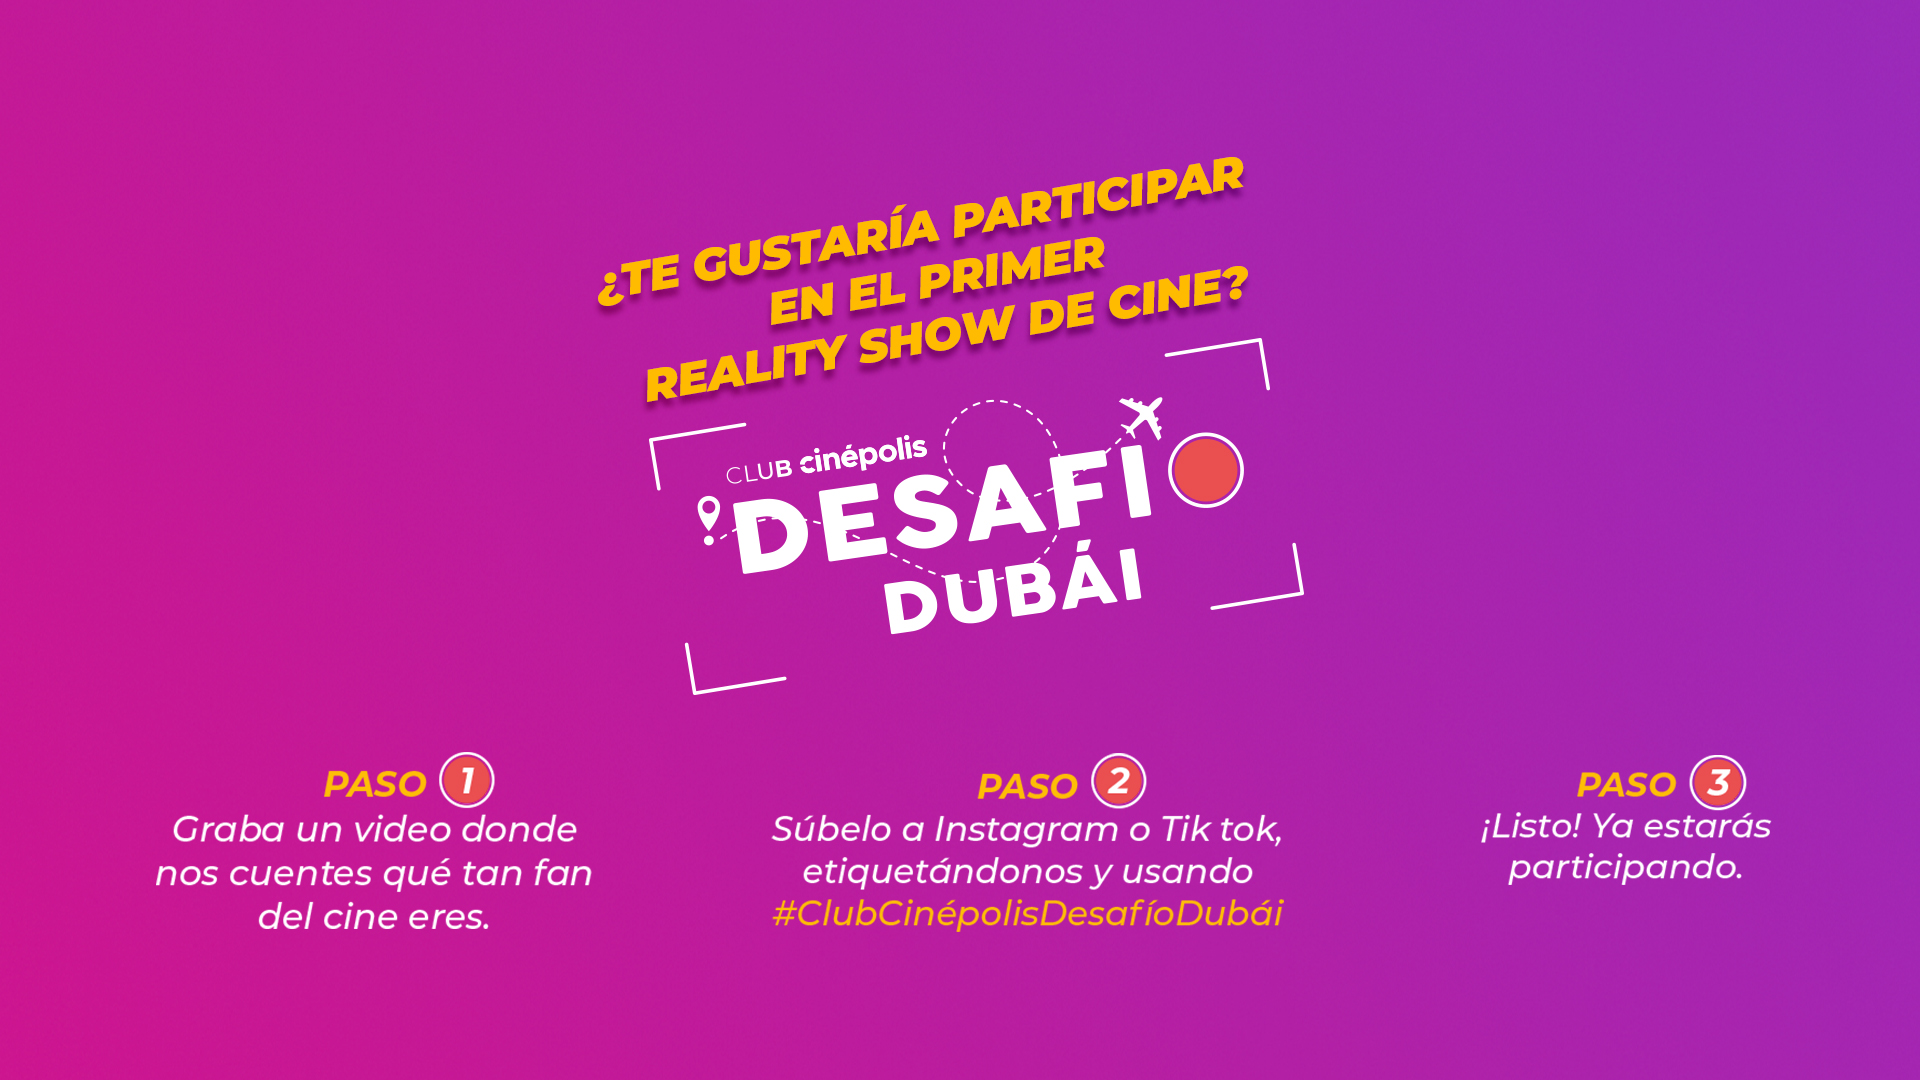 Sé parte del primer reality show de cine: Club Cinépolis Desafío Dubái.